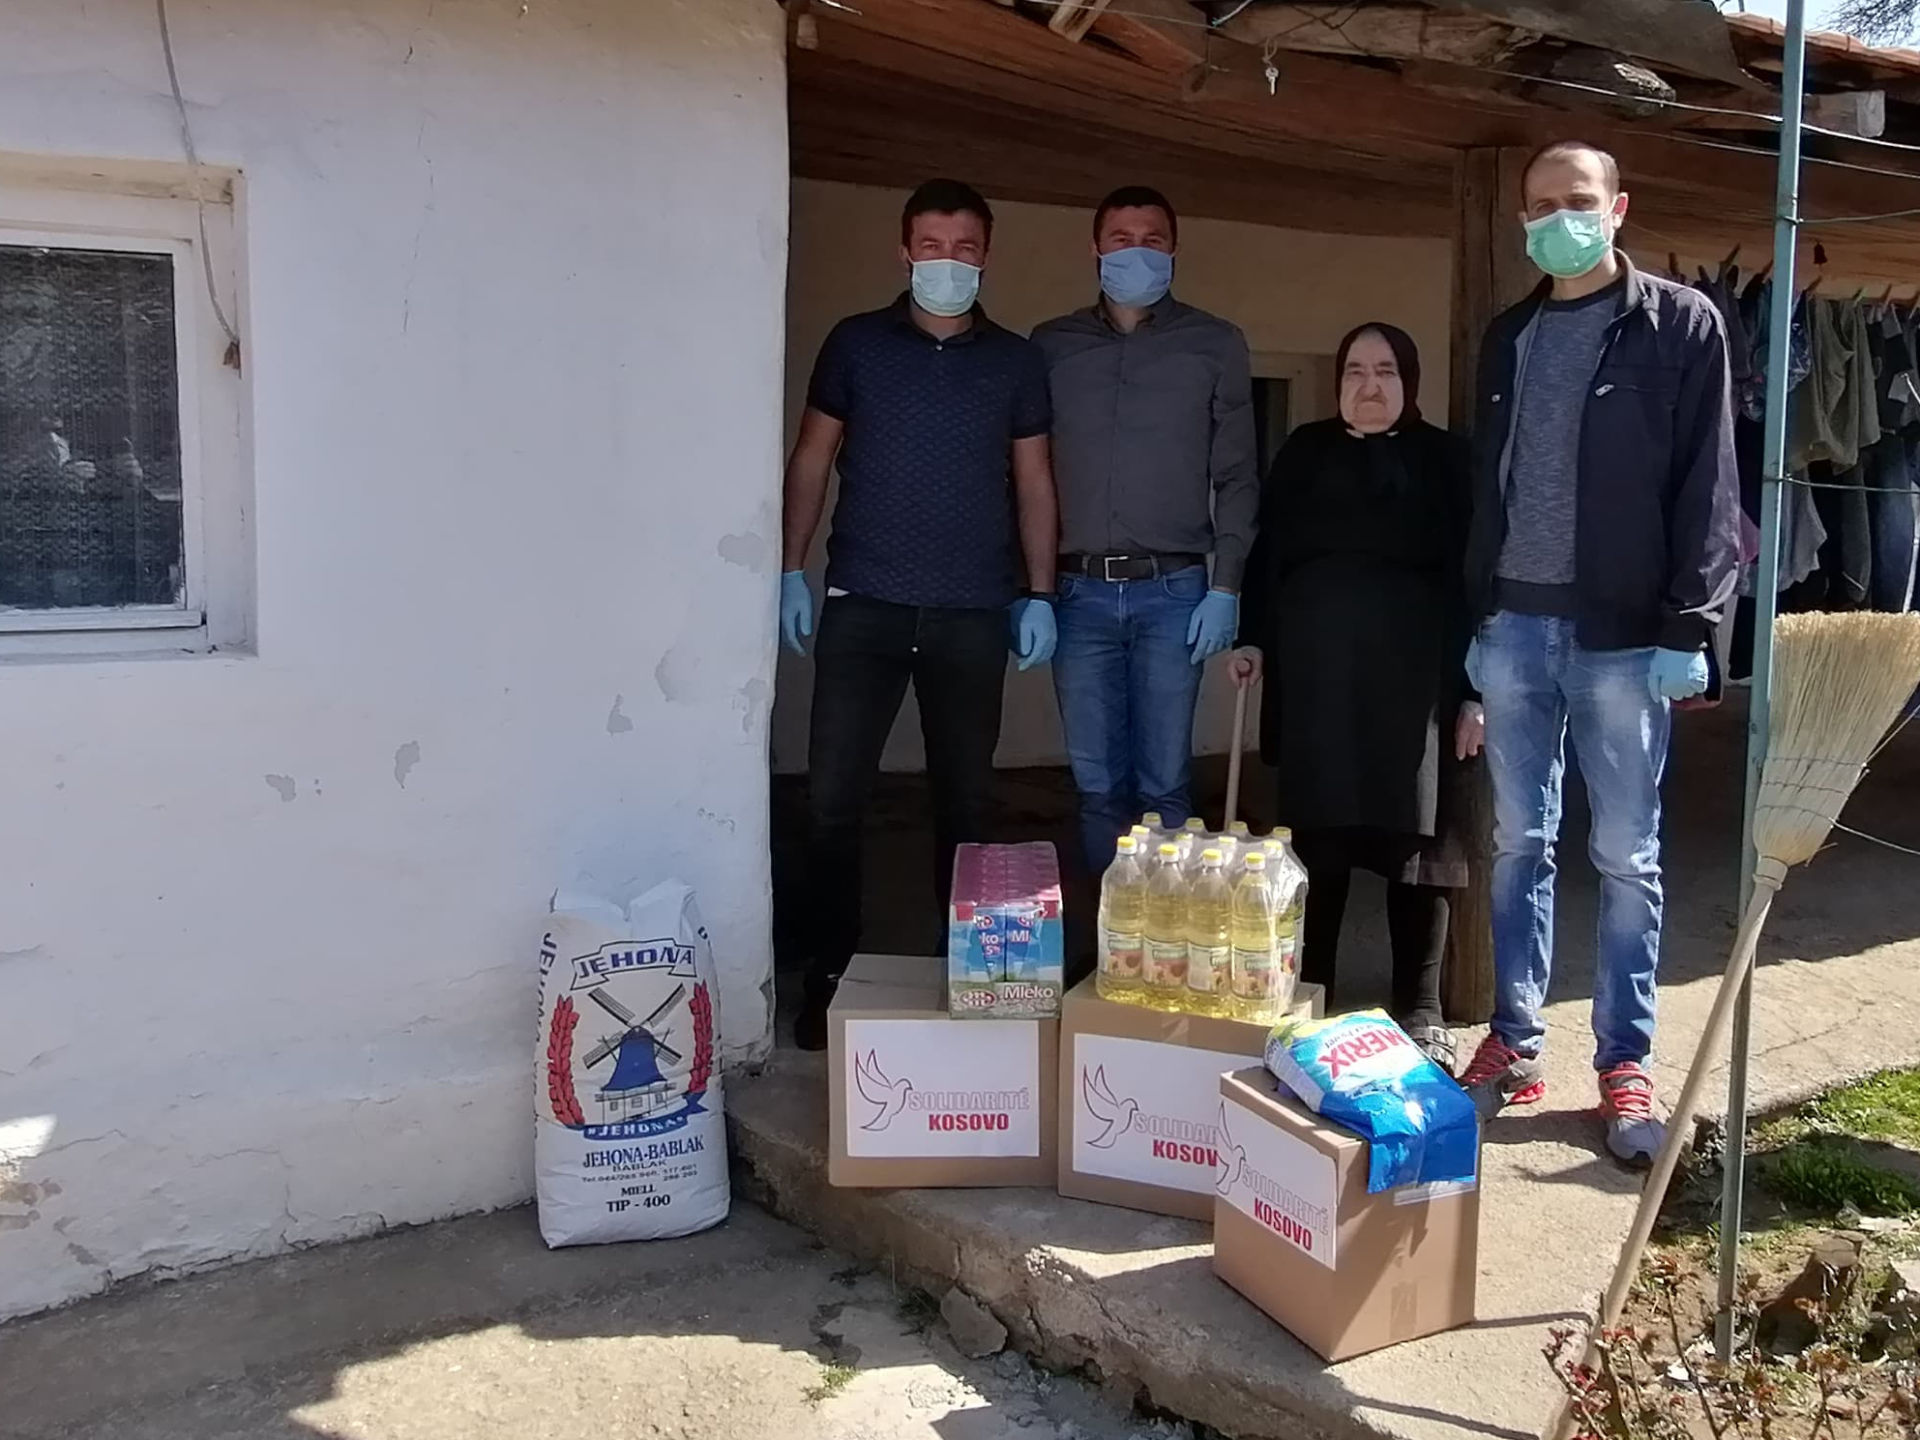 Notre bureau humanitaire au Kosovo-Métochie reprend ses distributions d’aide d’urgence